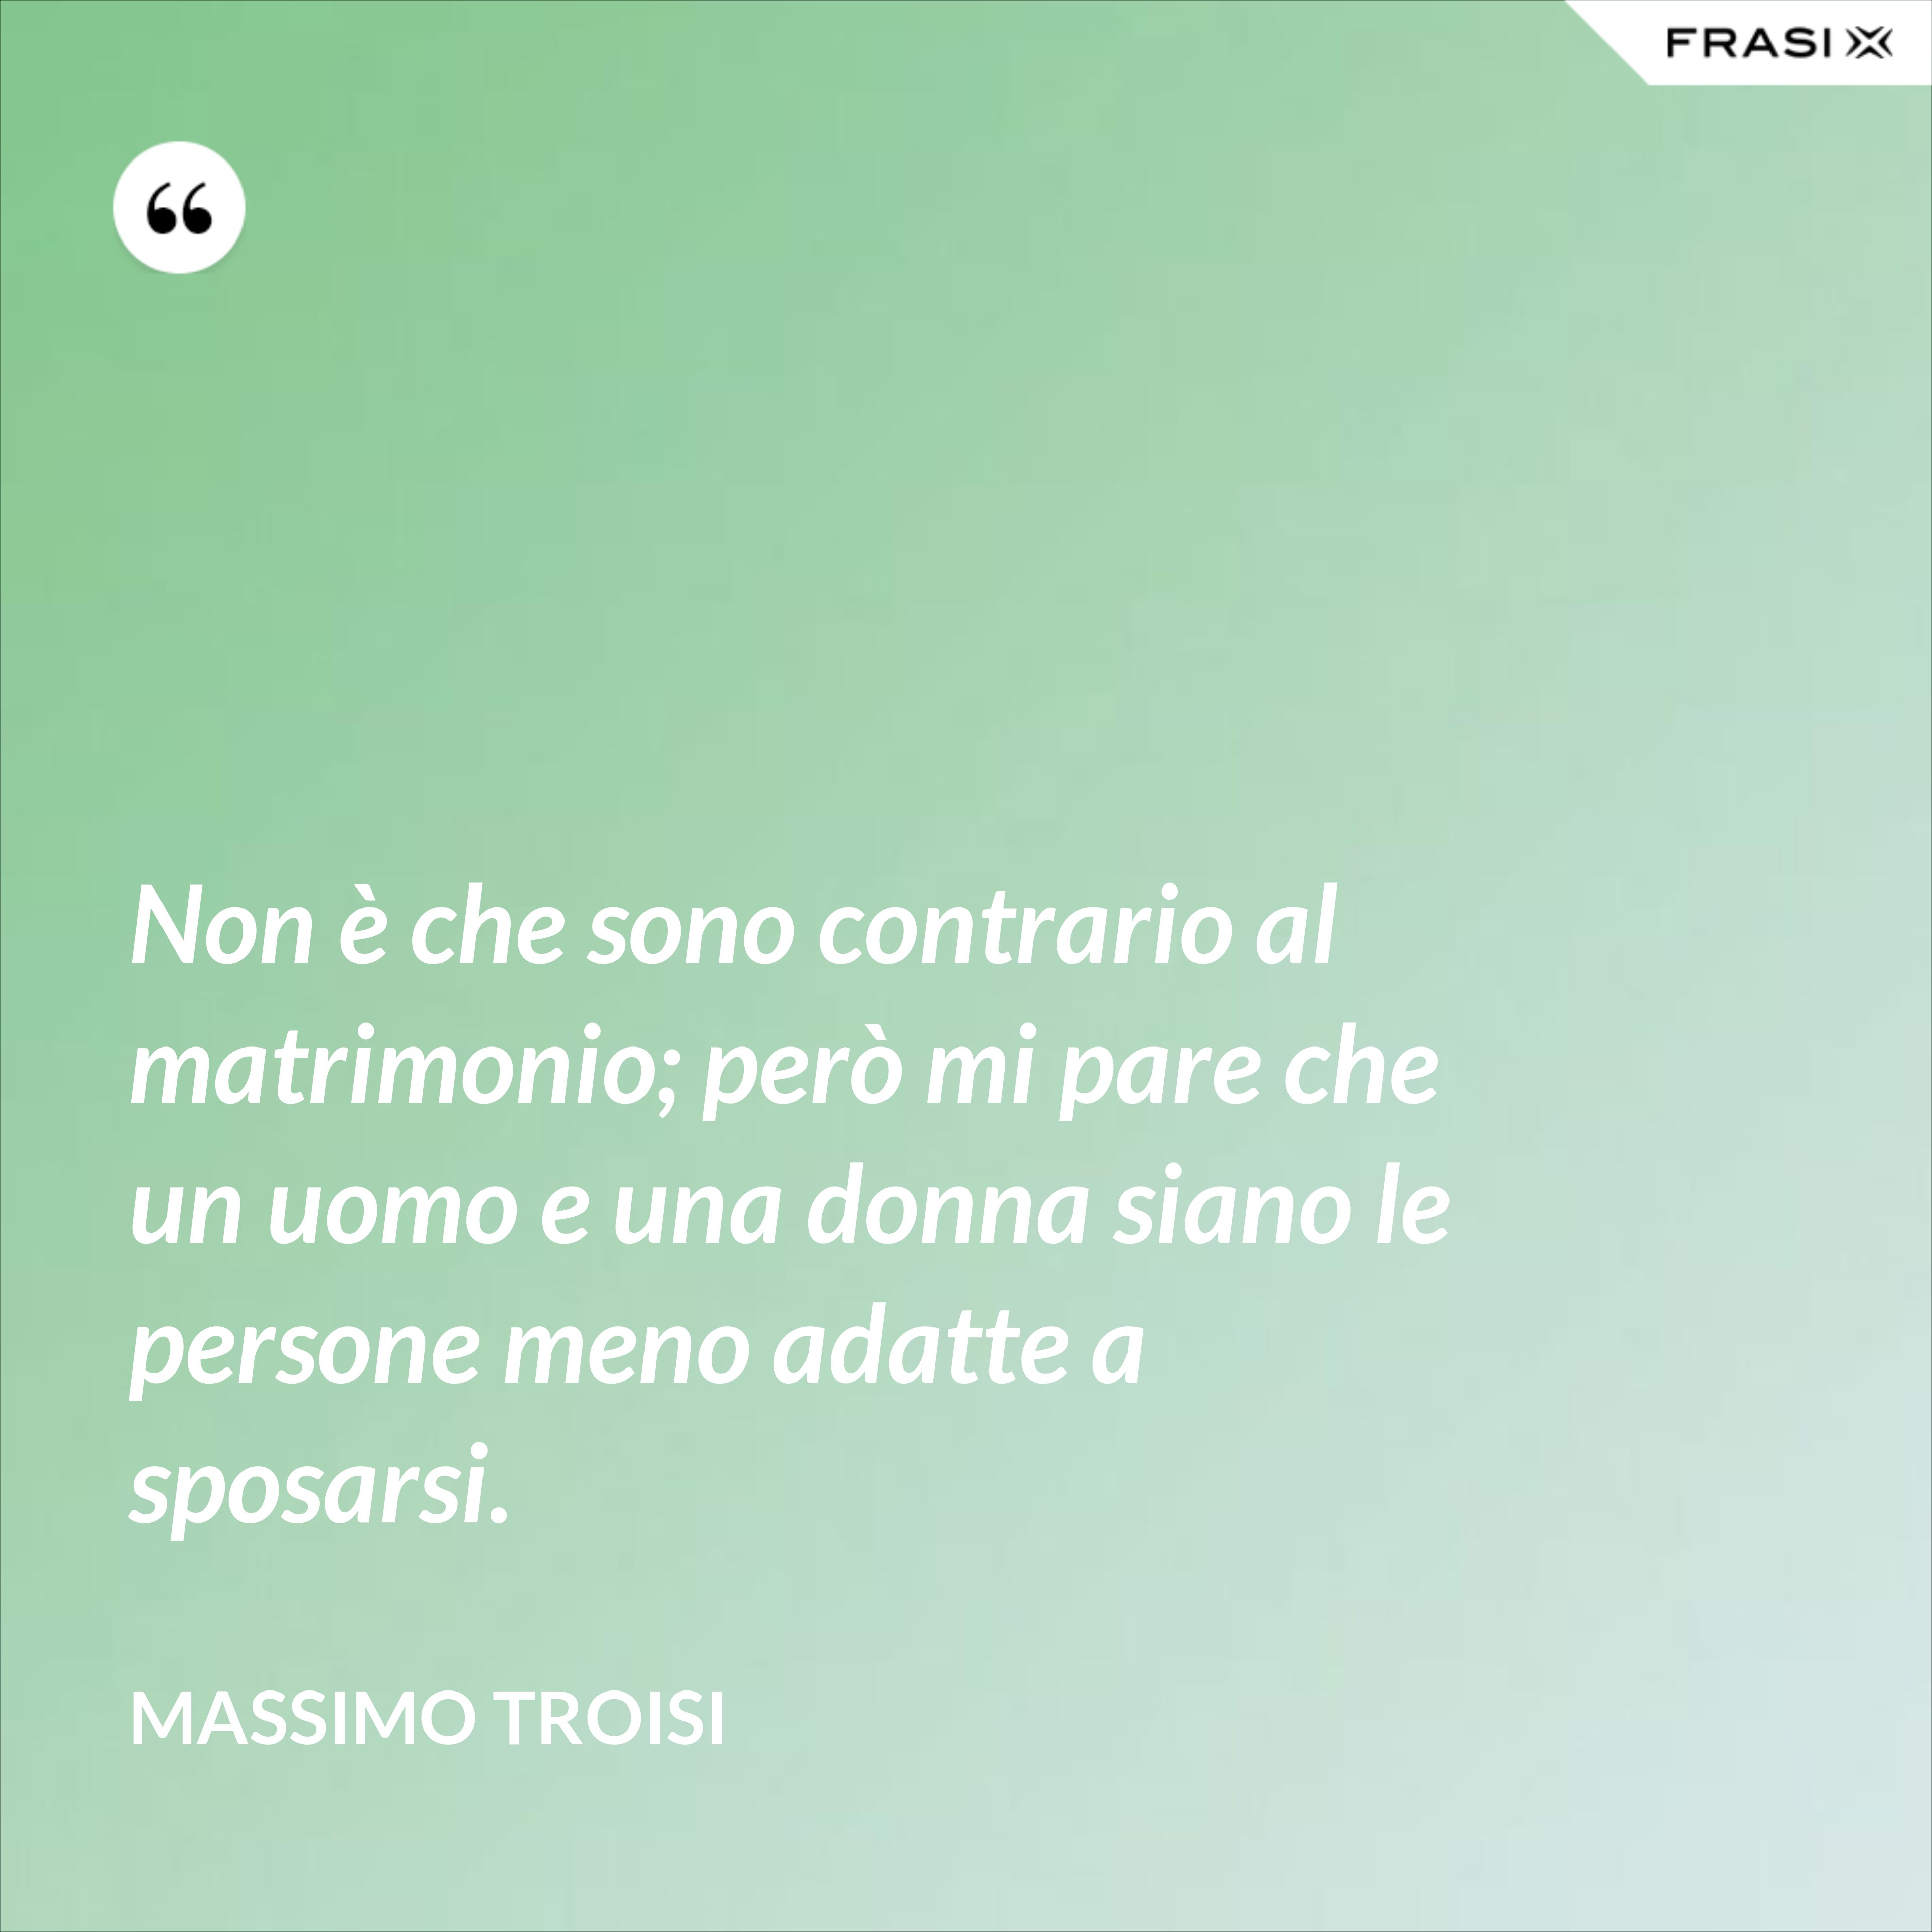 Non è che sono contrario al matrimonio; però mi pare che un uomo e una donna siano le persone meno adatte a sposarsi. - Massimo Troisi